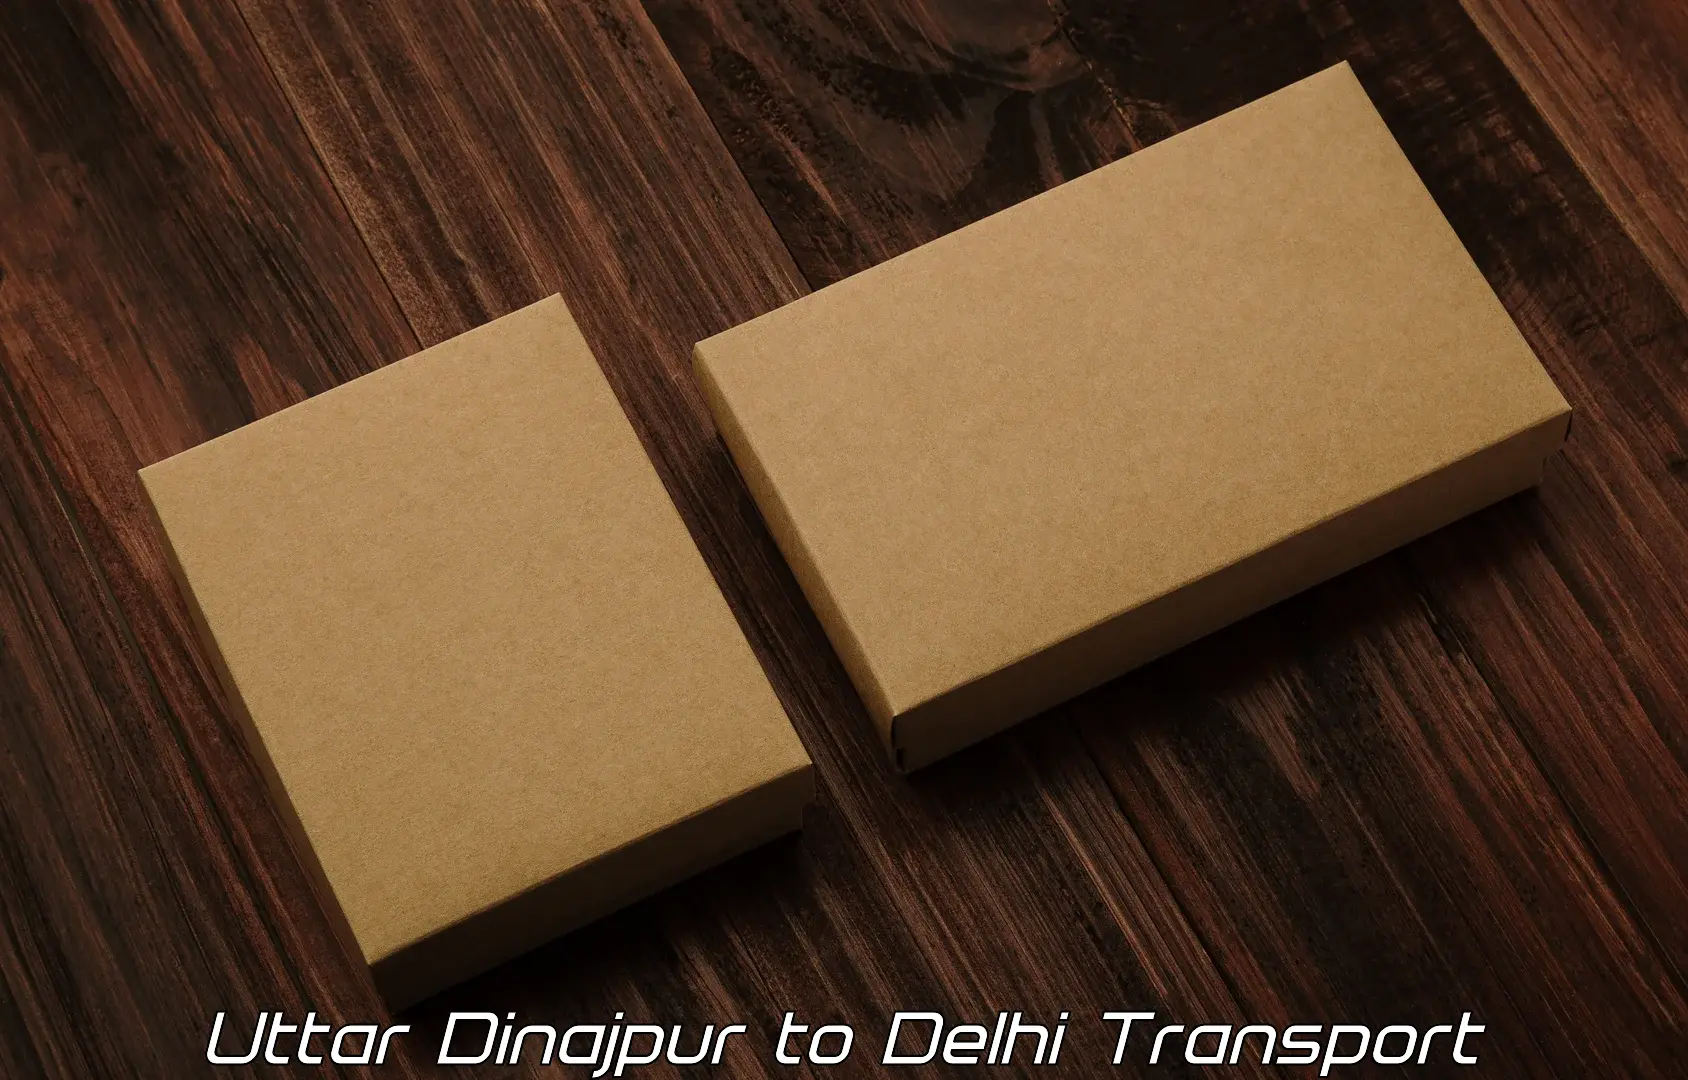 International cargo transportation services Uttar Dinajpur to Delhi Technological University DTU